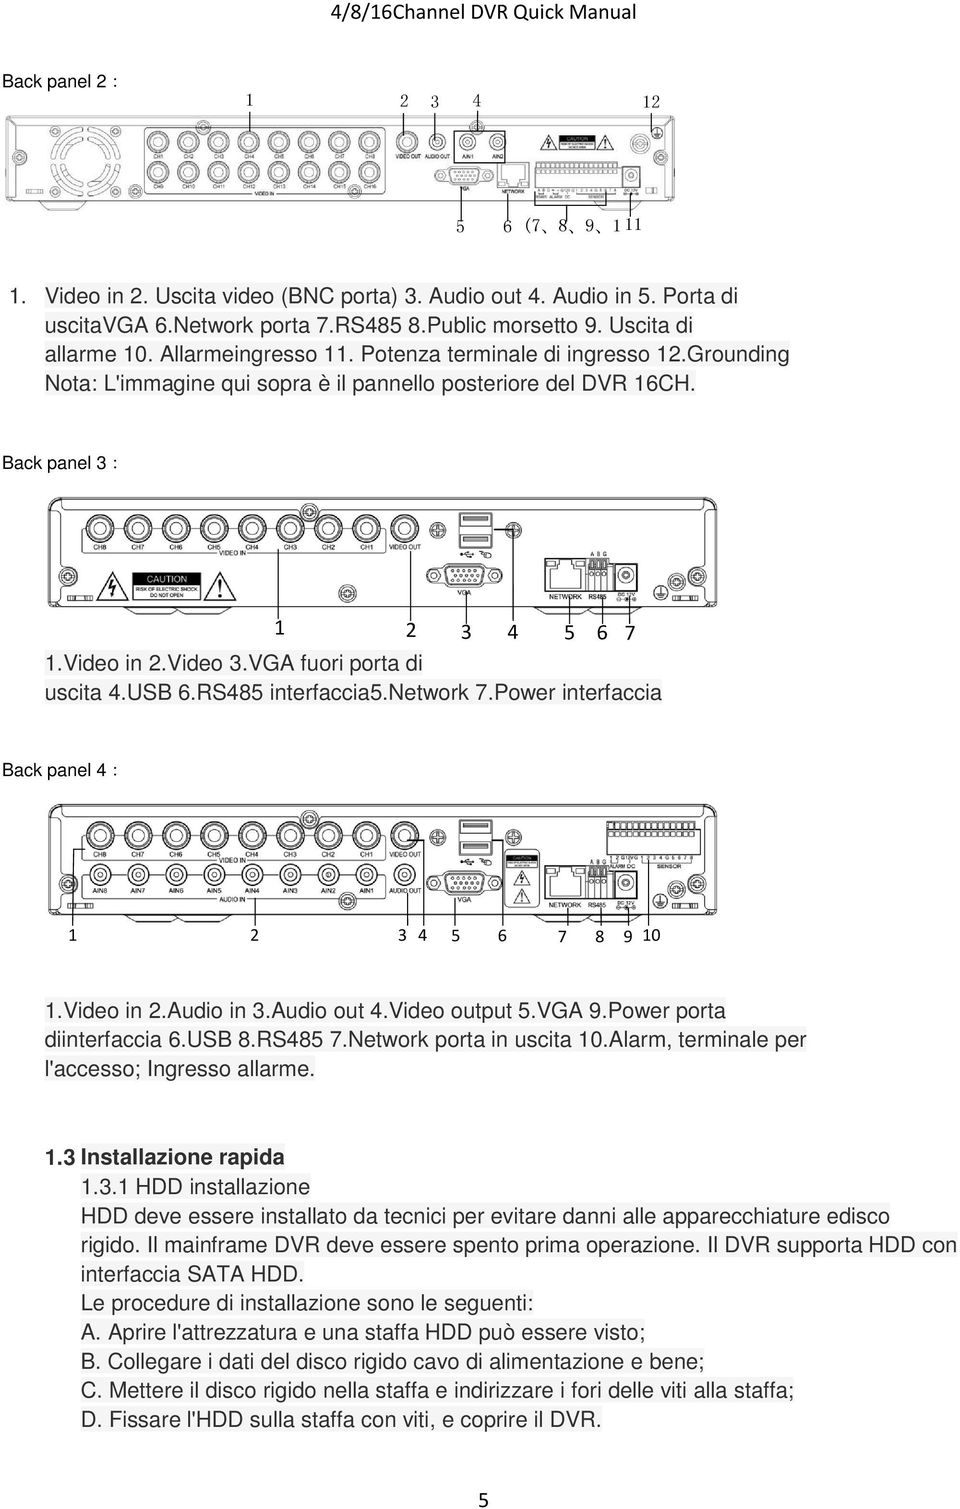 VGA fuori porta di uscita 4.USB 6.RS485 interfaccia5.network 7.Power interfaccia Back panel 4: 1 2 3 4 5 6 7 8 9 10 1.Video in 2.Audio in 3.Audio out 4.Video output 5.VGA 9.